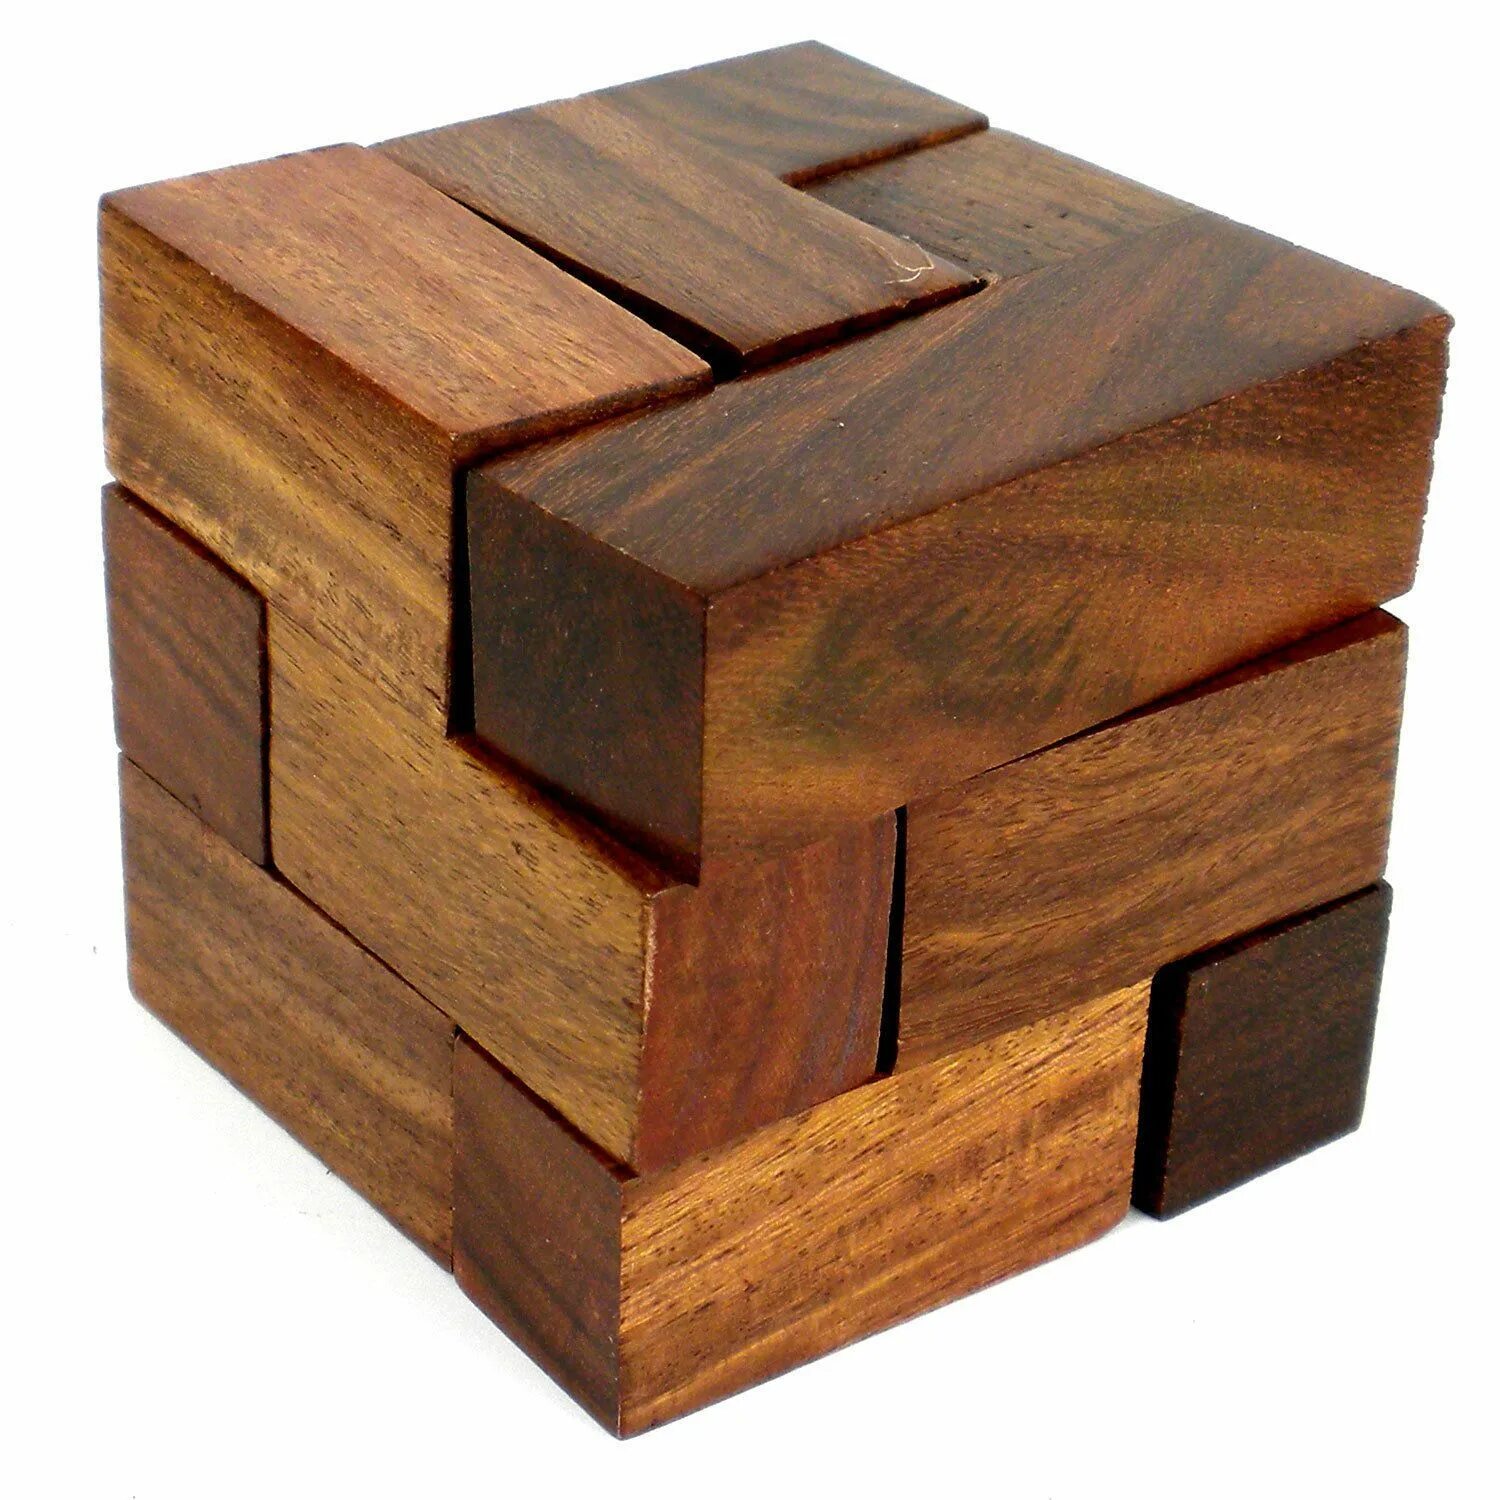 Kairstos-Cube деревянная головоломка. Деревянная головоломка куб Дюбуа. Головоломка из деревянных брусков. Декоративный куб. Собрать головоломку из дерева